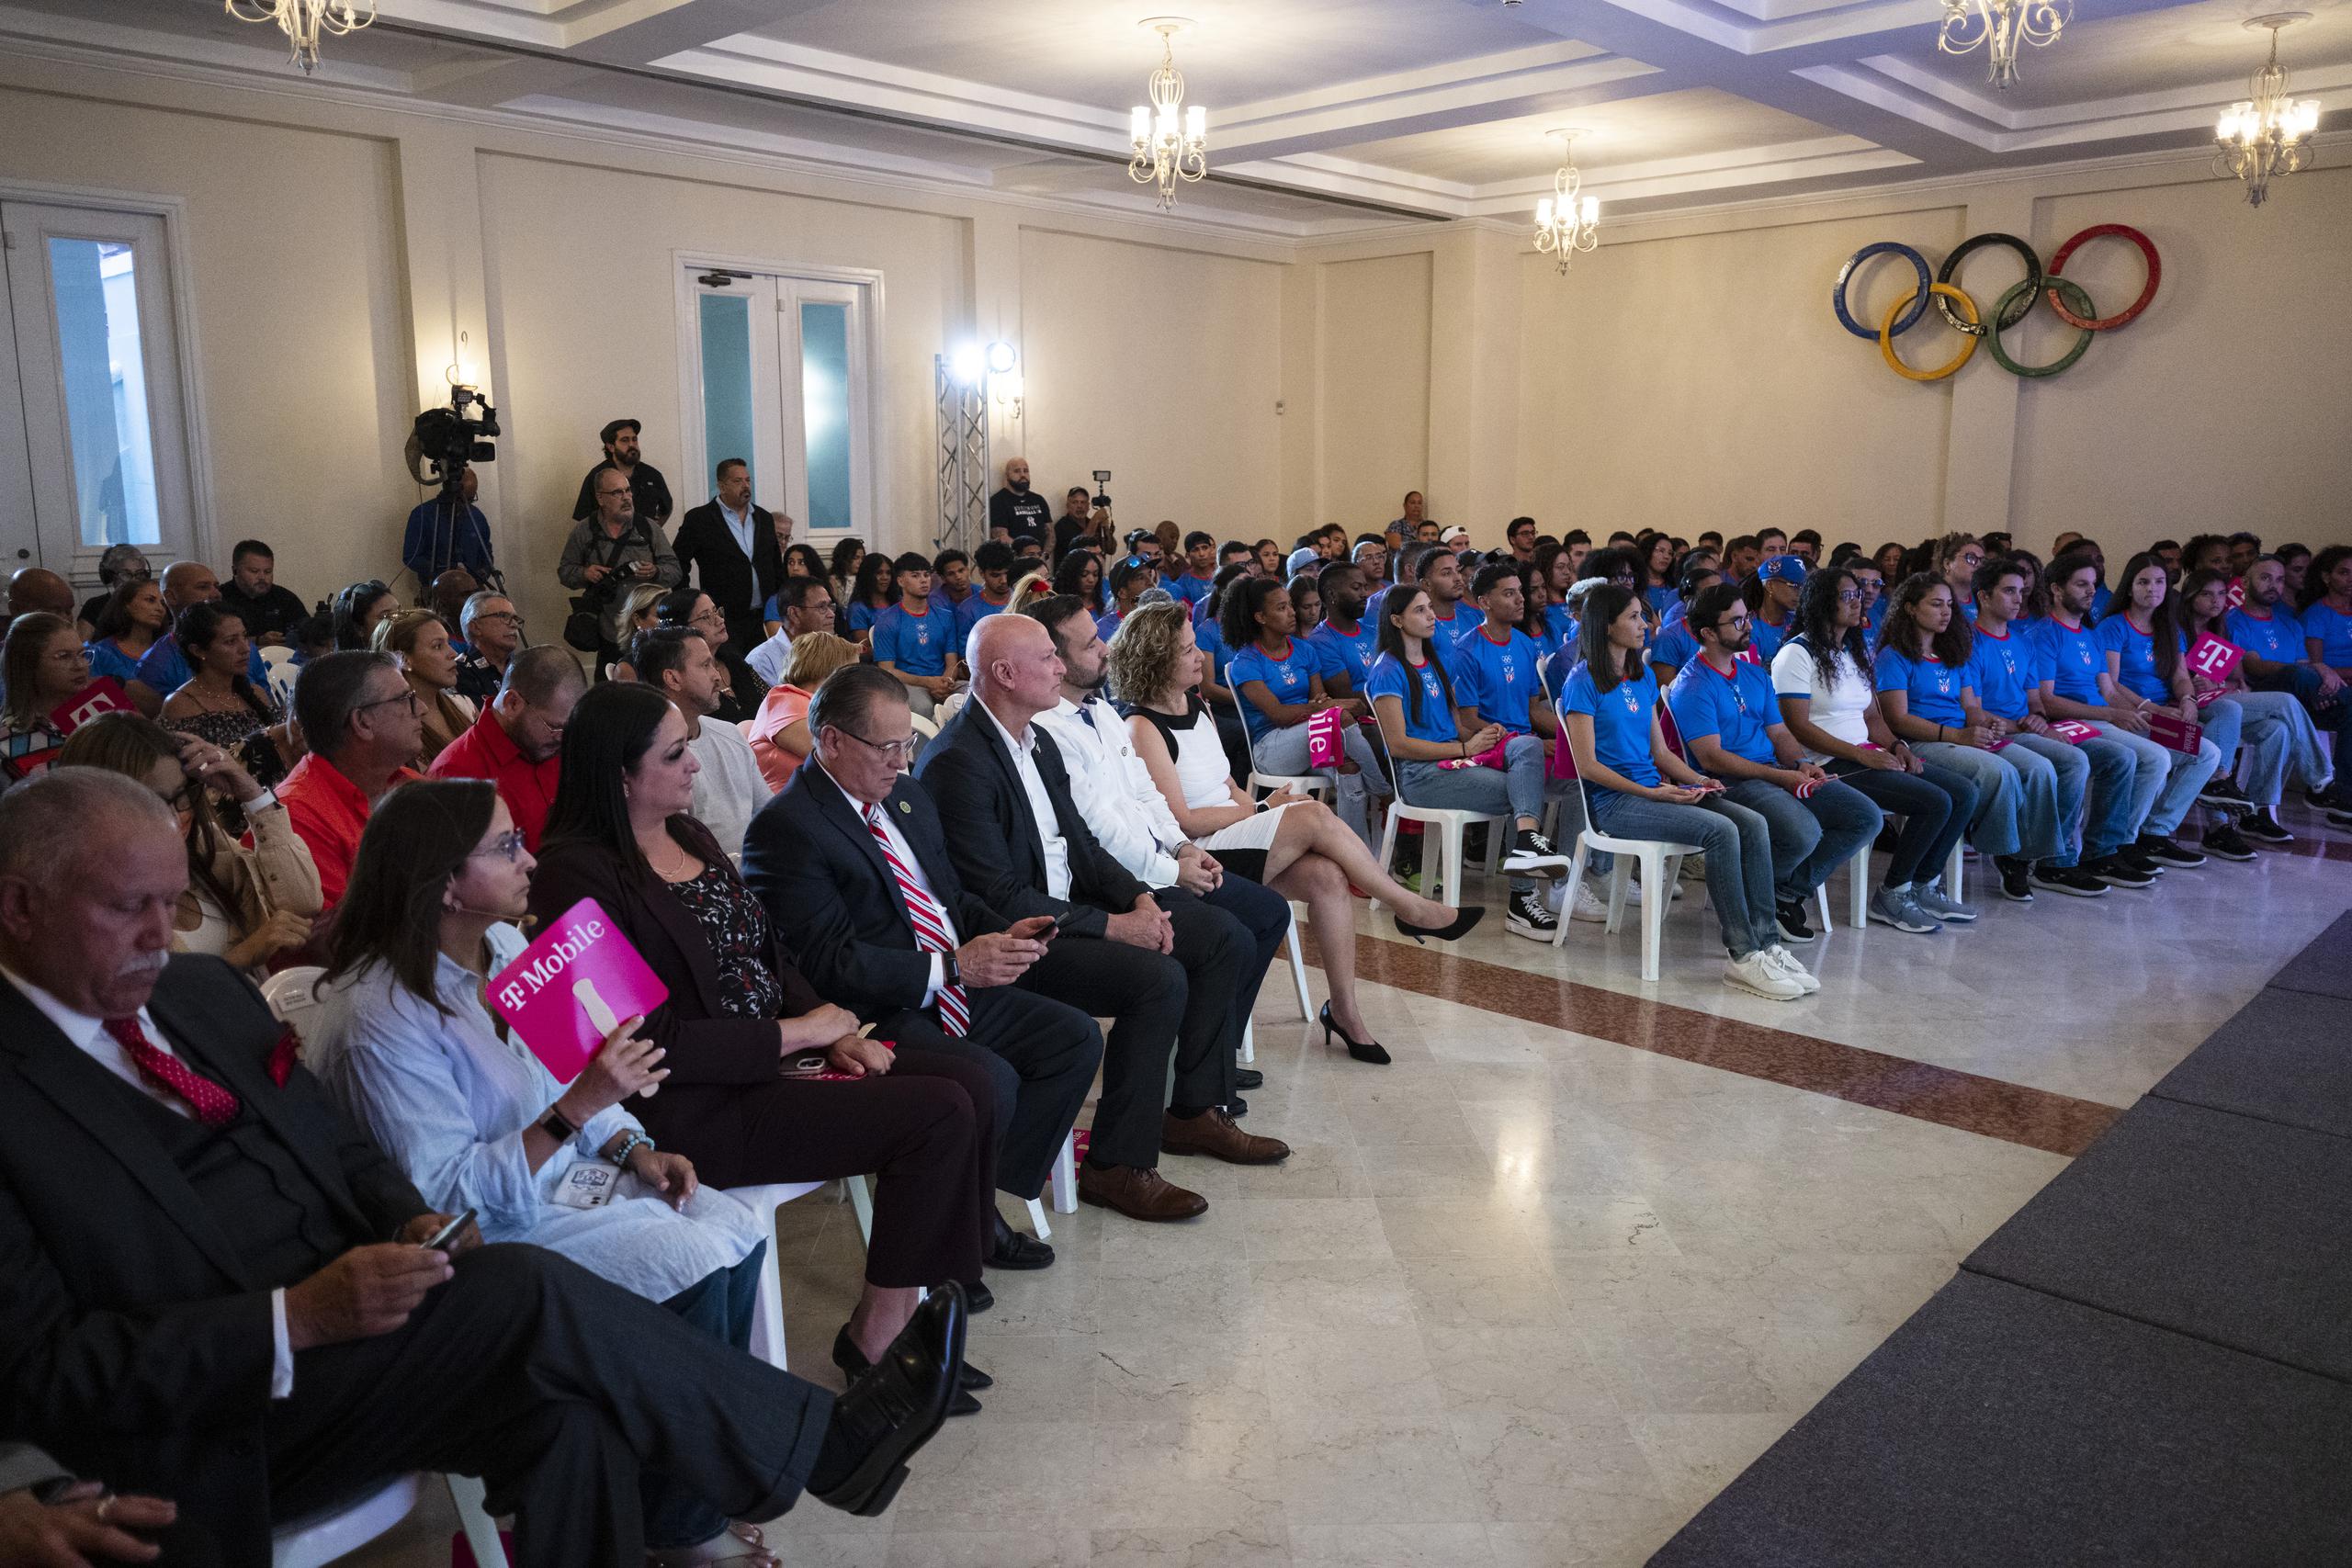 Oficiales y atletas llenaron el Salón de los Presidentes en la Casa Olímpica, en donde se celebró este martes la ceremonia de abanderamiento.